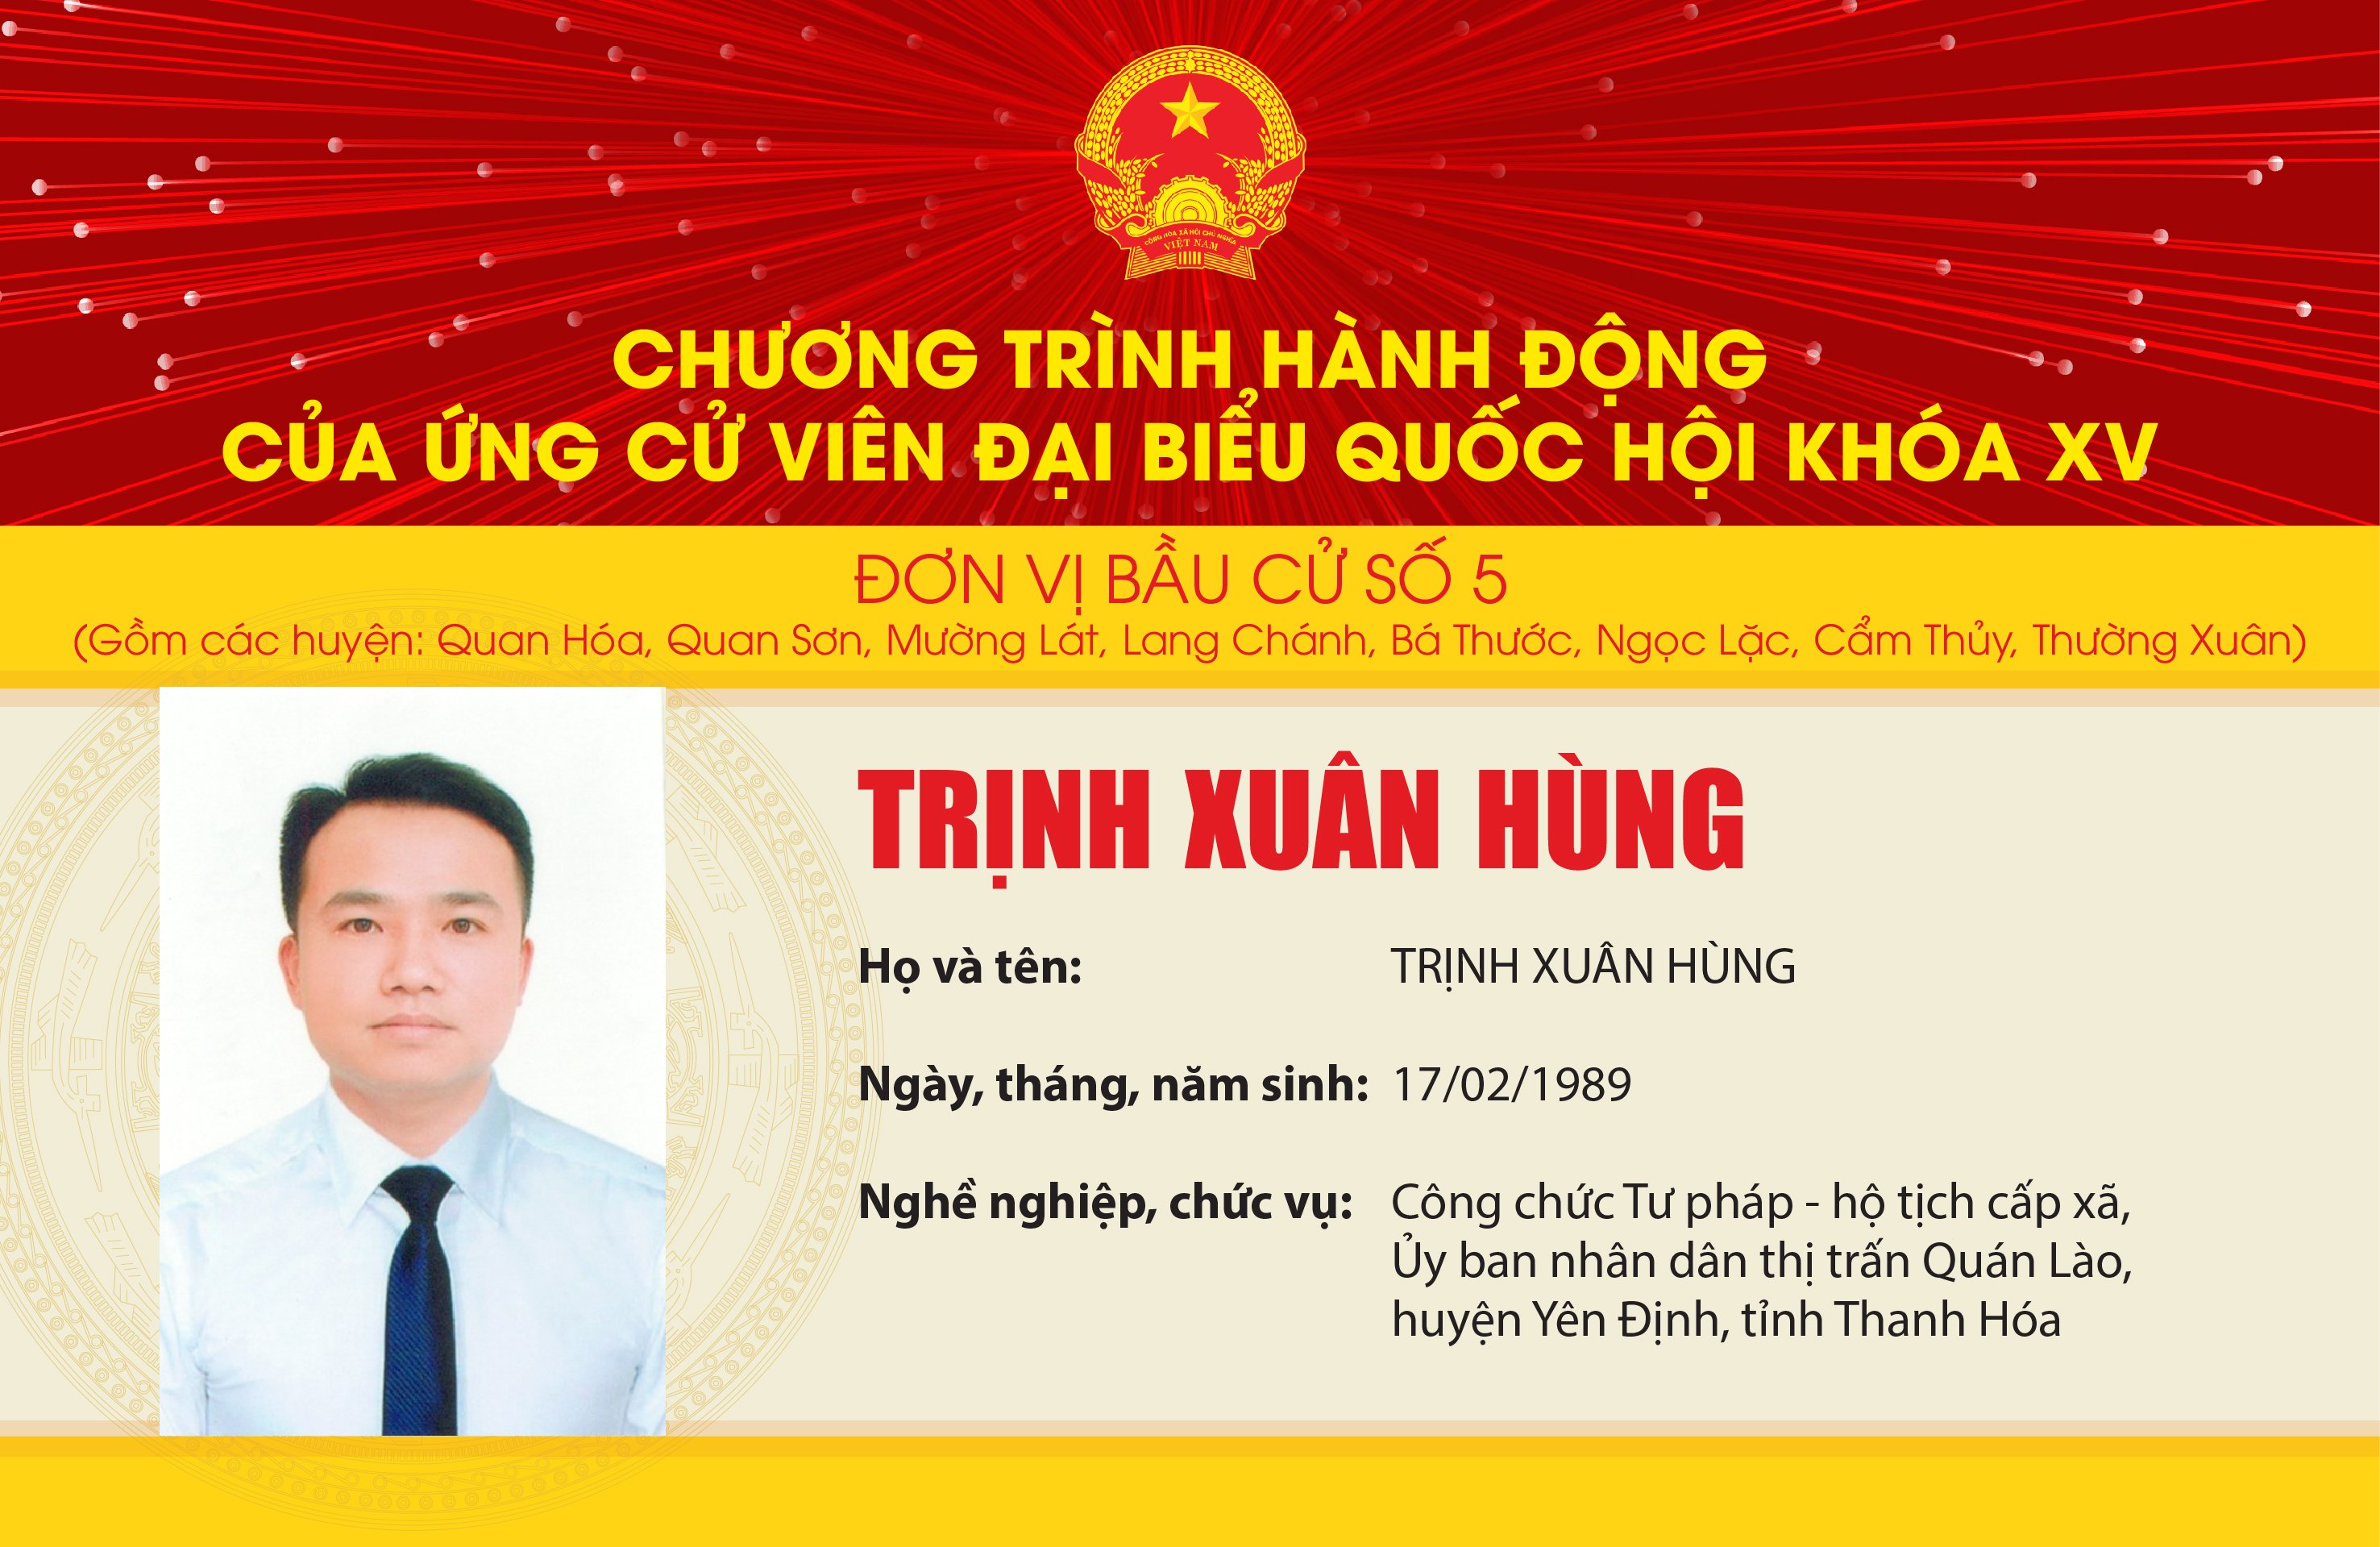 Chương trình hành động của Ứng cử viên Đại biểu Quốc hội khóa XV Trịnh Xuân Hùng - Đơn vị bầu cử số 5